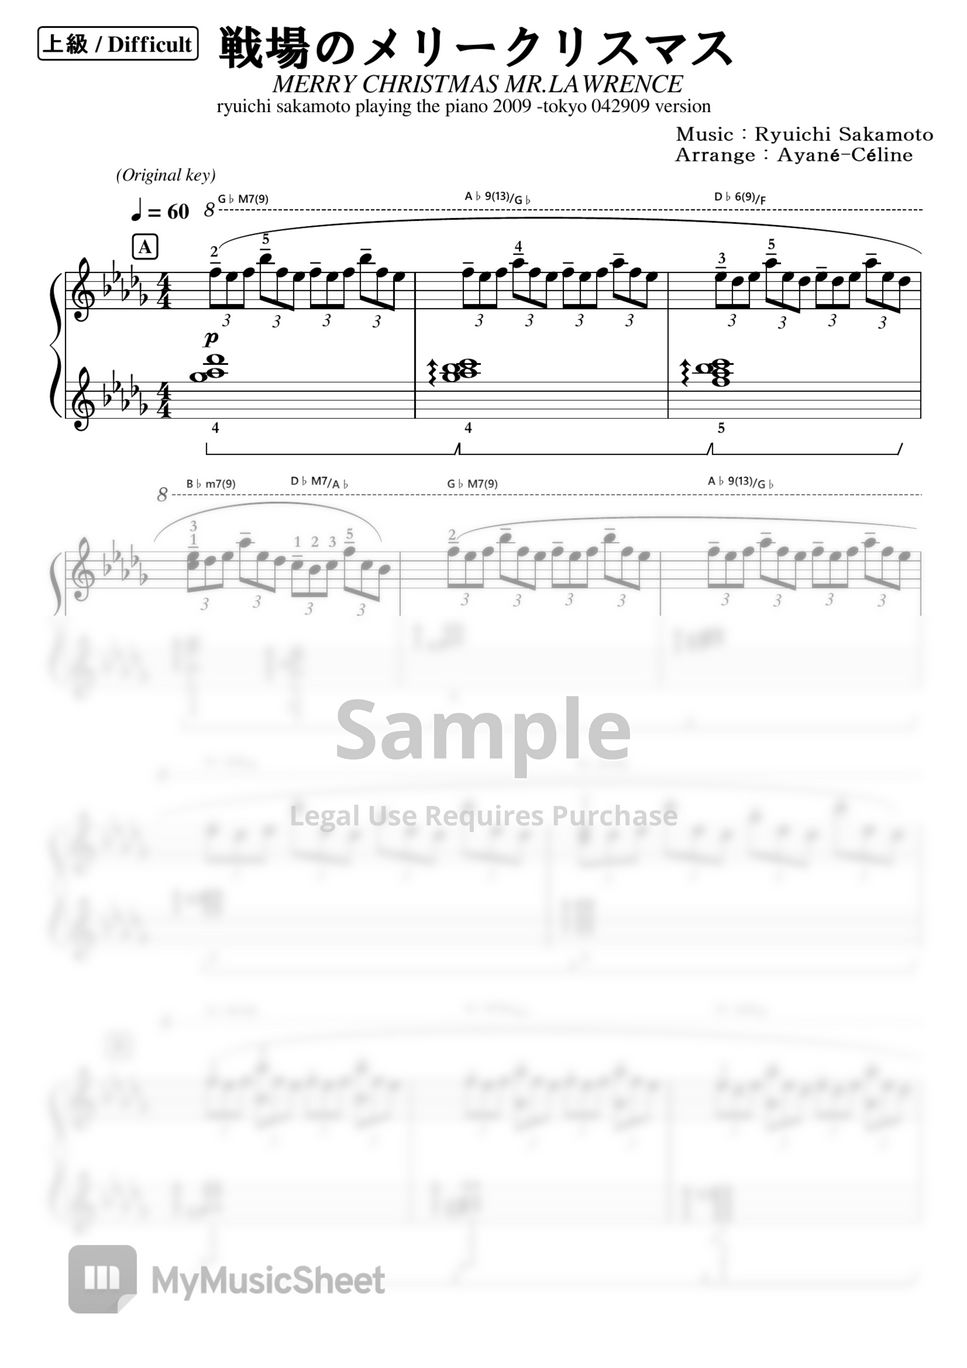 坂本龍一 - 戦場のメリークリスマス( tokyo 042909 version） (ピアノソロ（上級）) by アヤネ・セリーヌ